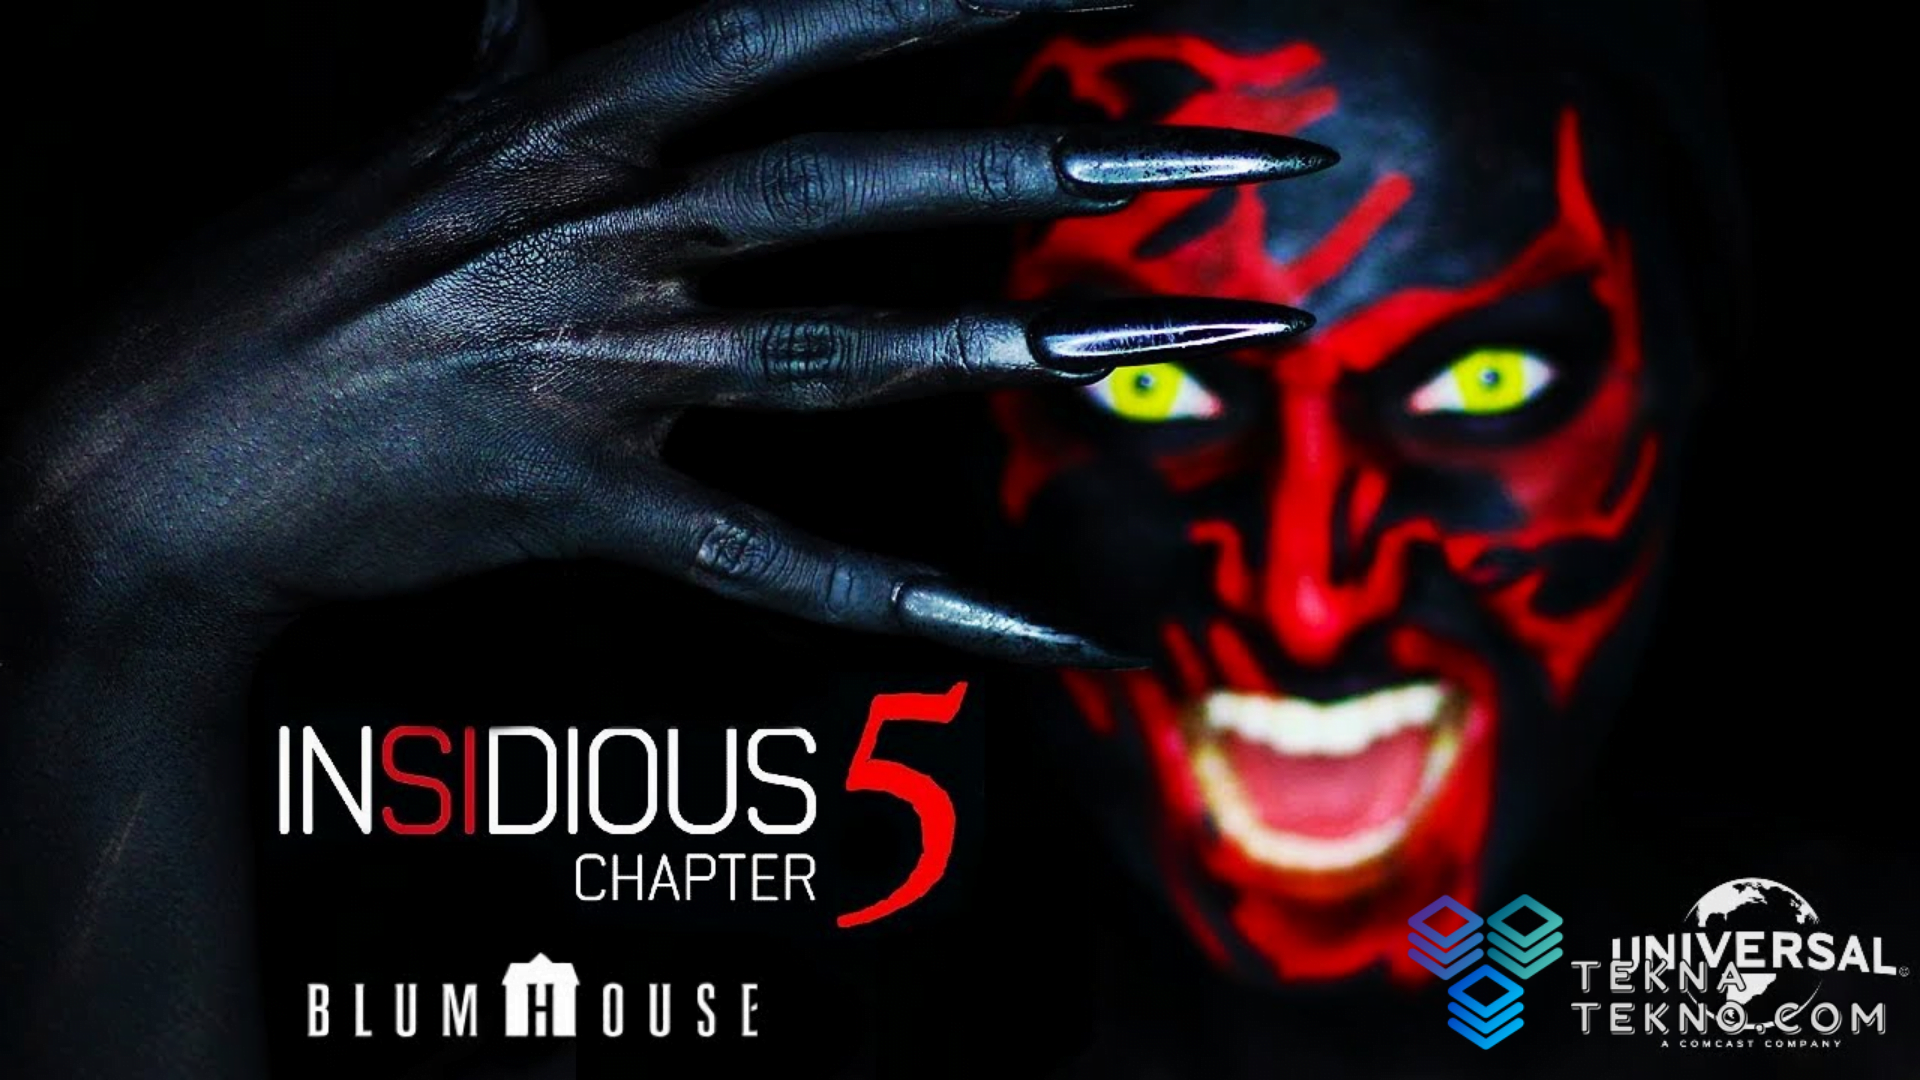 Nonton Insidious 5 The Dark Realm, Inilah 9 Aplikasi Beli Tiket Bioskop Online di Android dan iOS